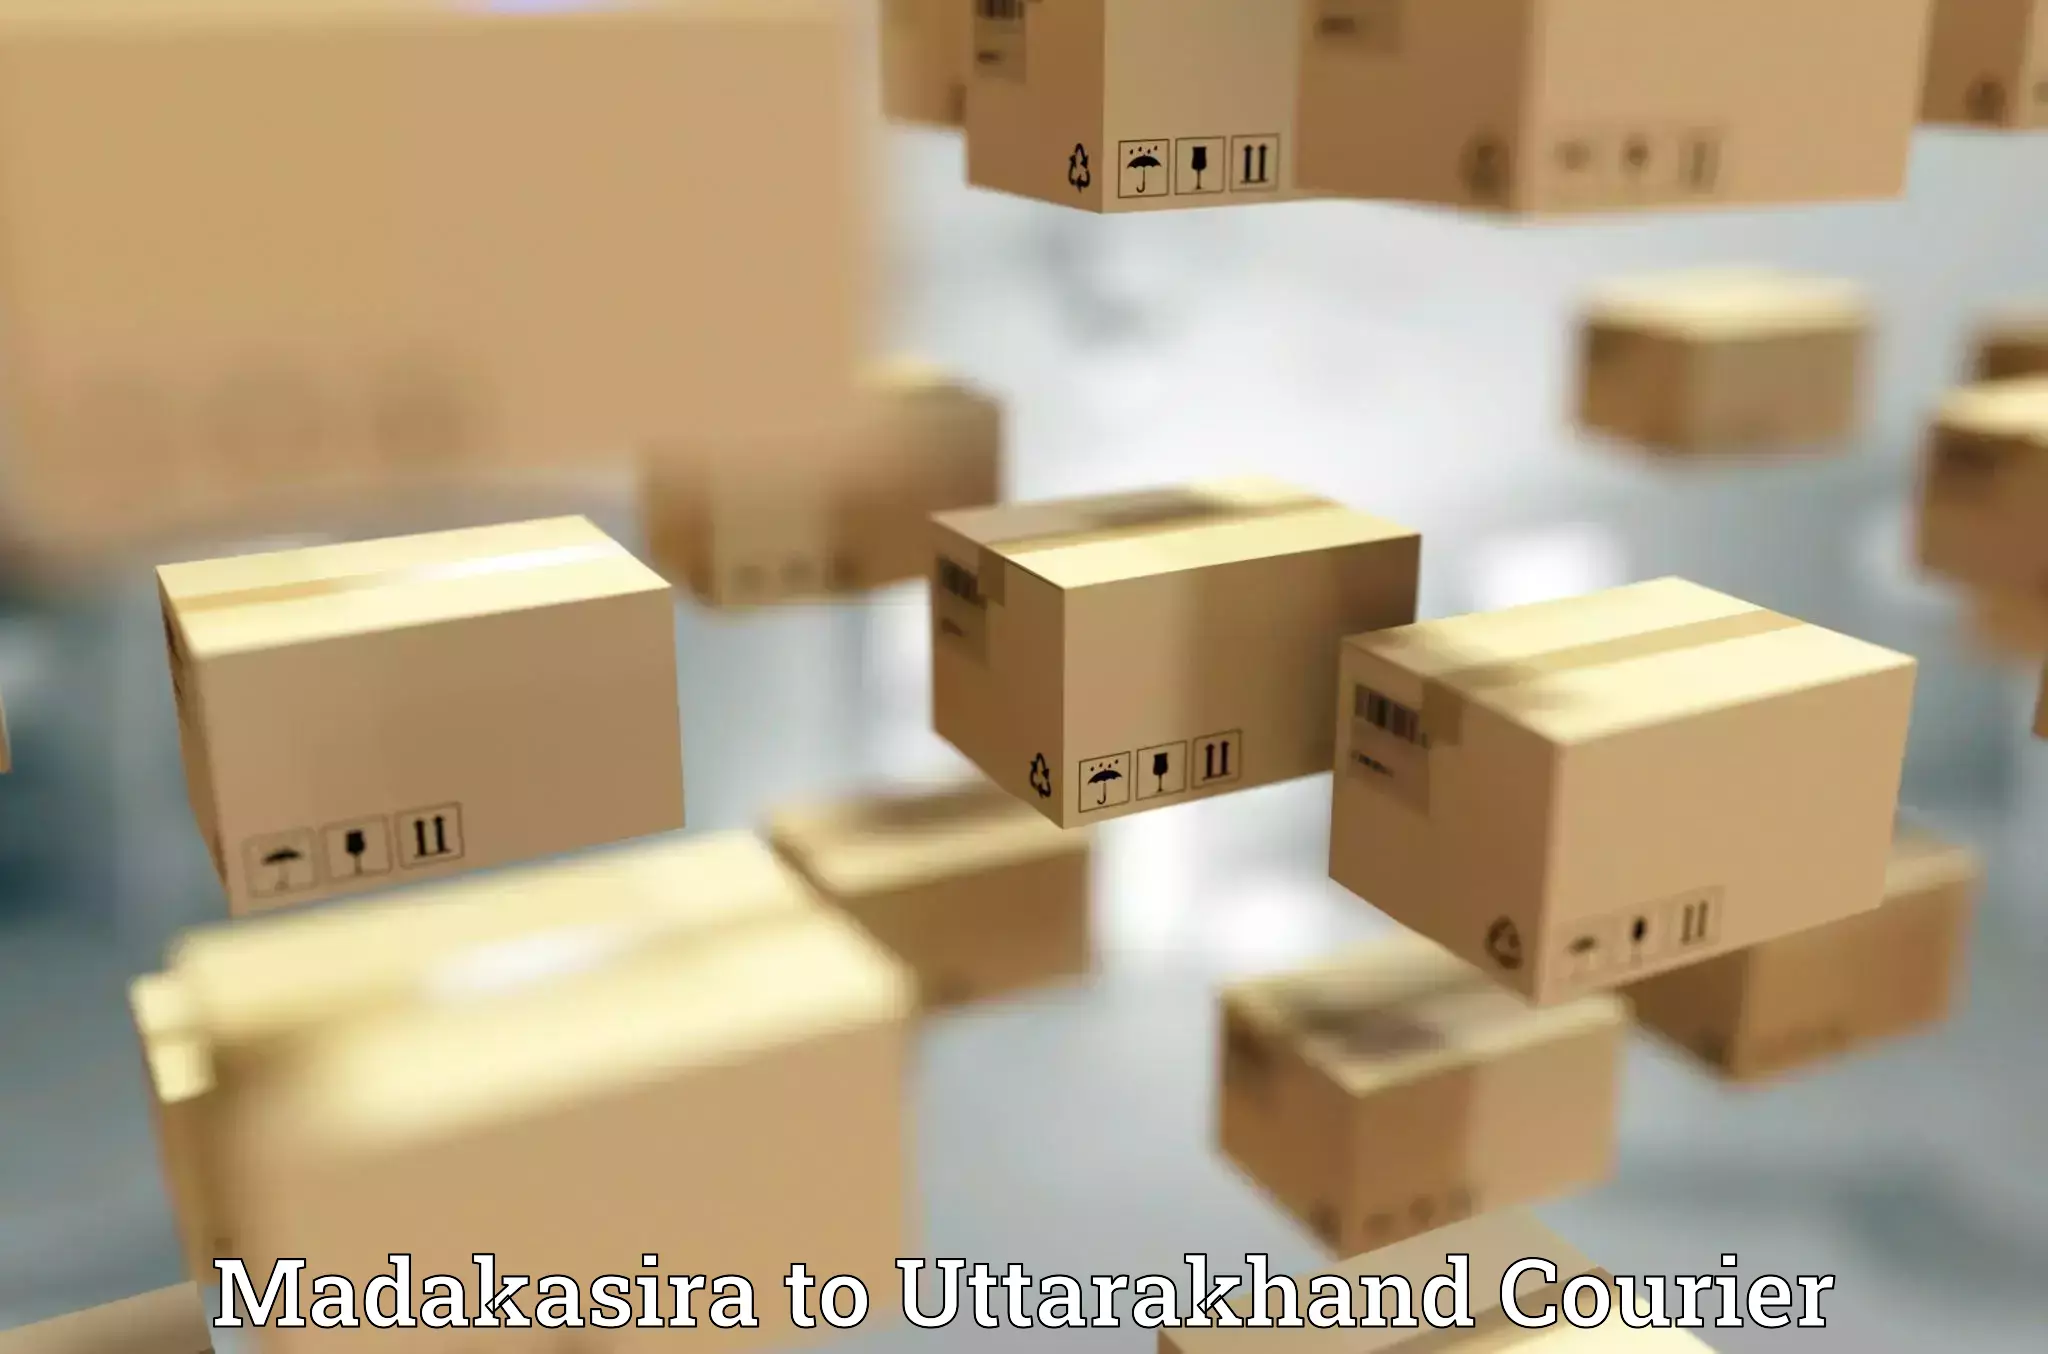 Cost-effective courier options Madakasira to Uttarakhand